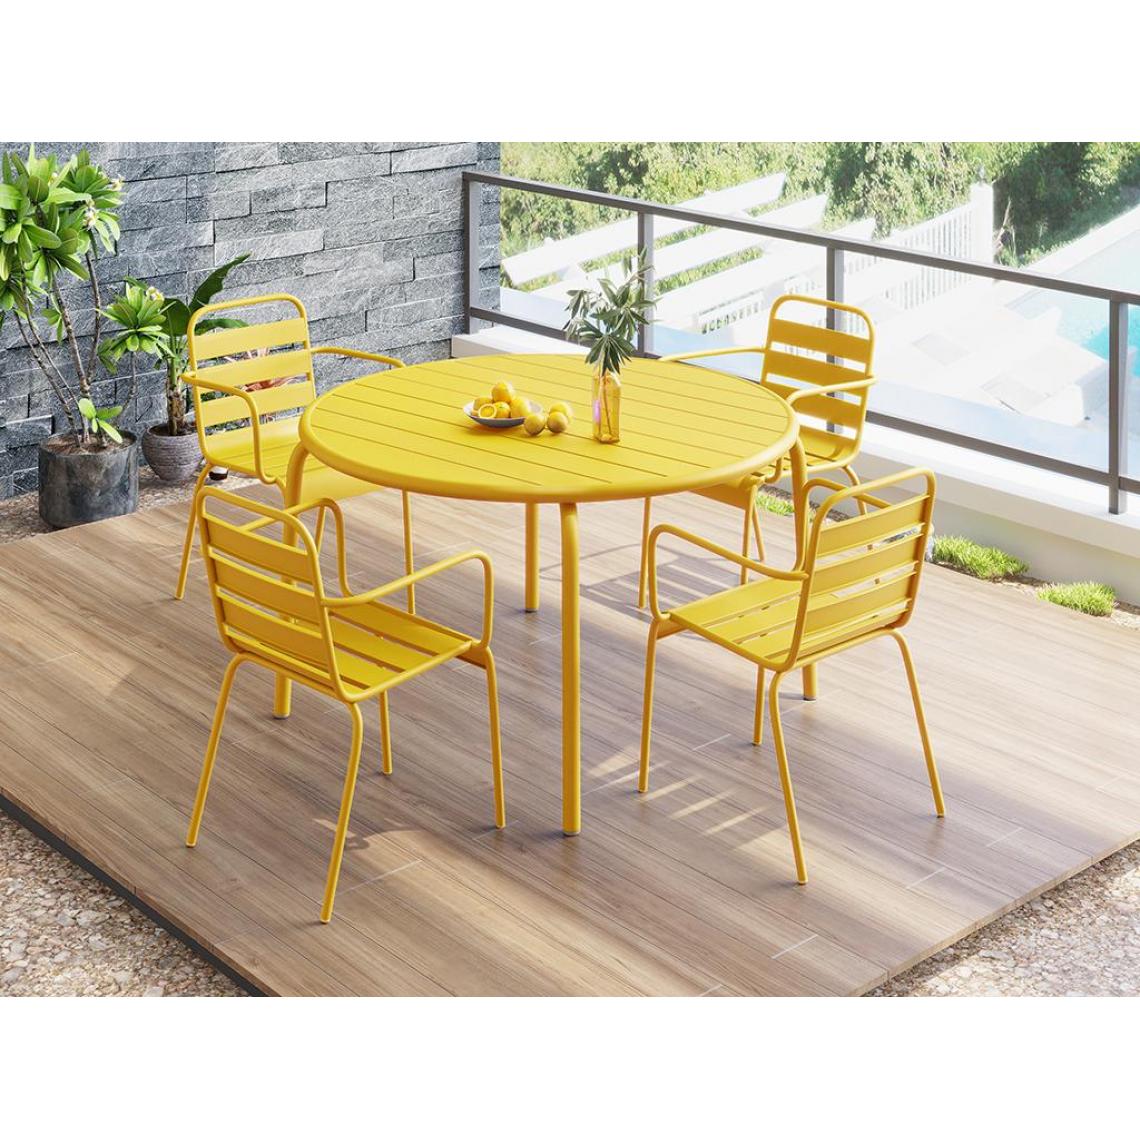 Vente-Unique - Ensemble jardin table et chaise MIRMANDE - Ensembles tables et chaises